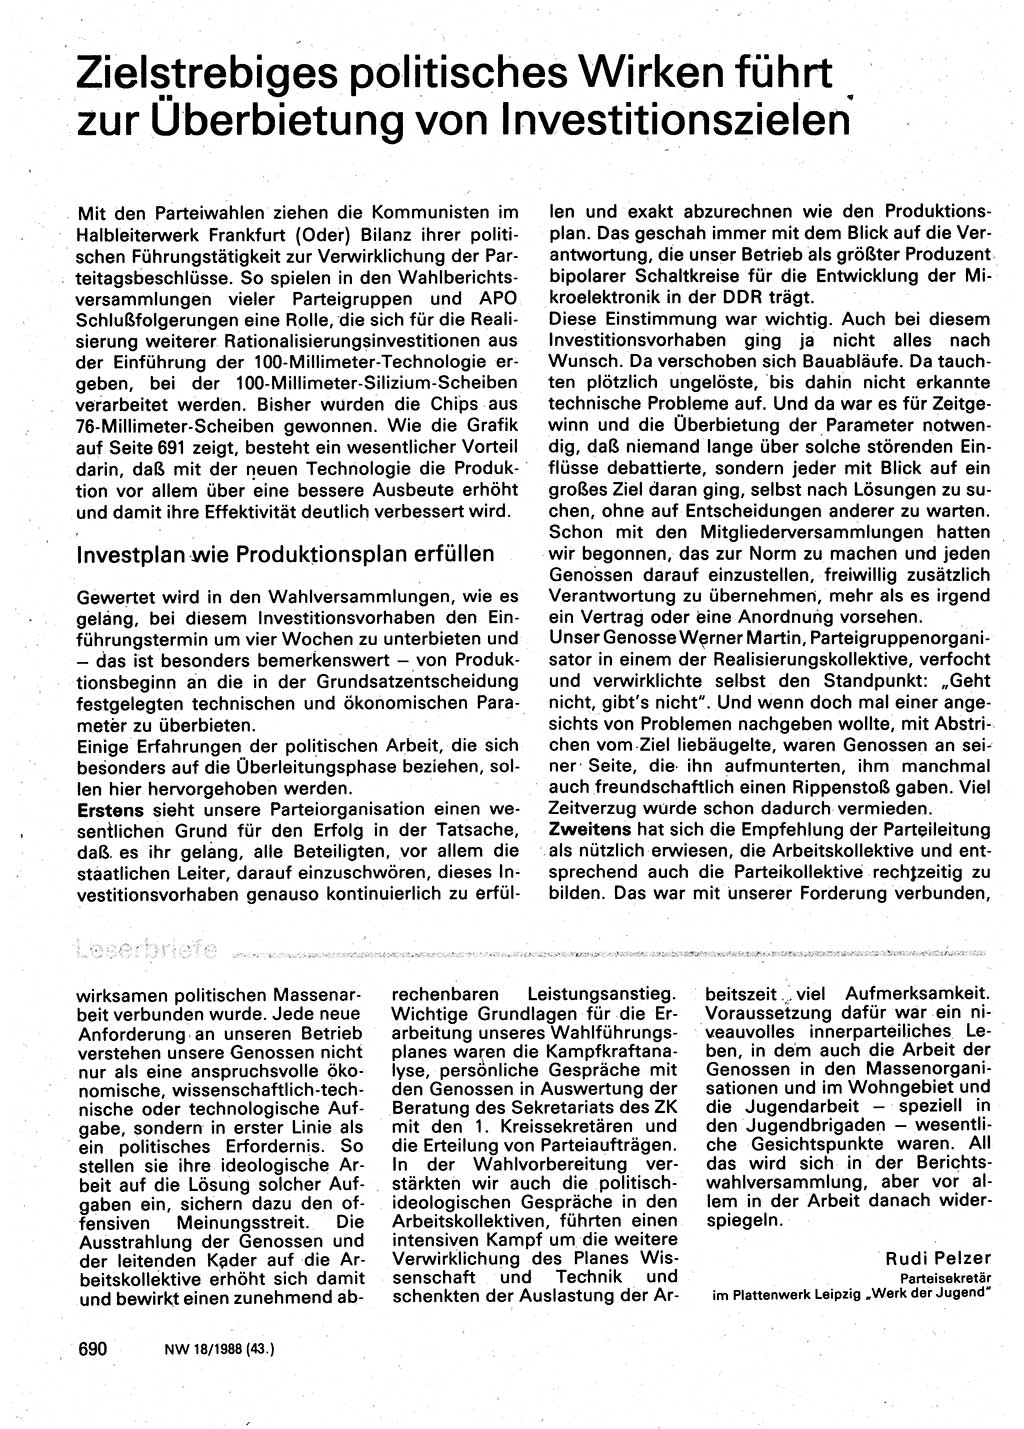 Neuer Weg (NW), Organ des Zentralkomitees (ZK) der SED (Sozialistische Einheitspartei Deutschlands) für Fragen des Parteilebens, 43. Jahrgang [Deutsche Demokratische Republik (DDR)] 1988, Seite 690 (NW ZK SED DDR 1988, S. 690)